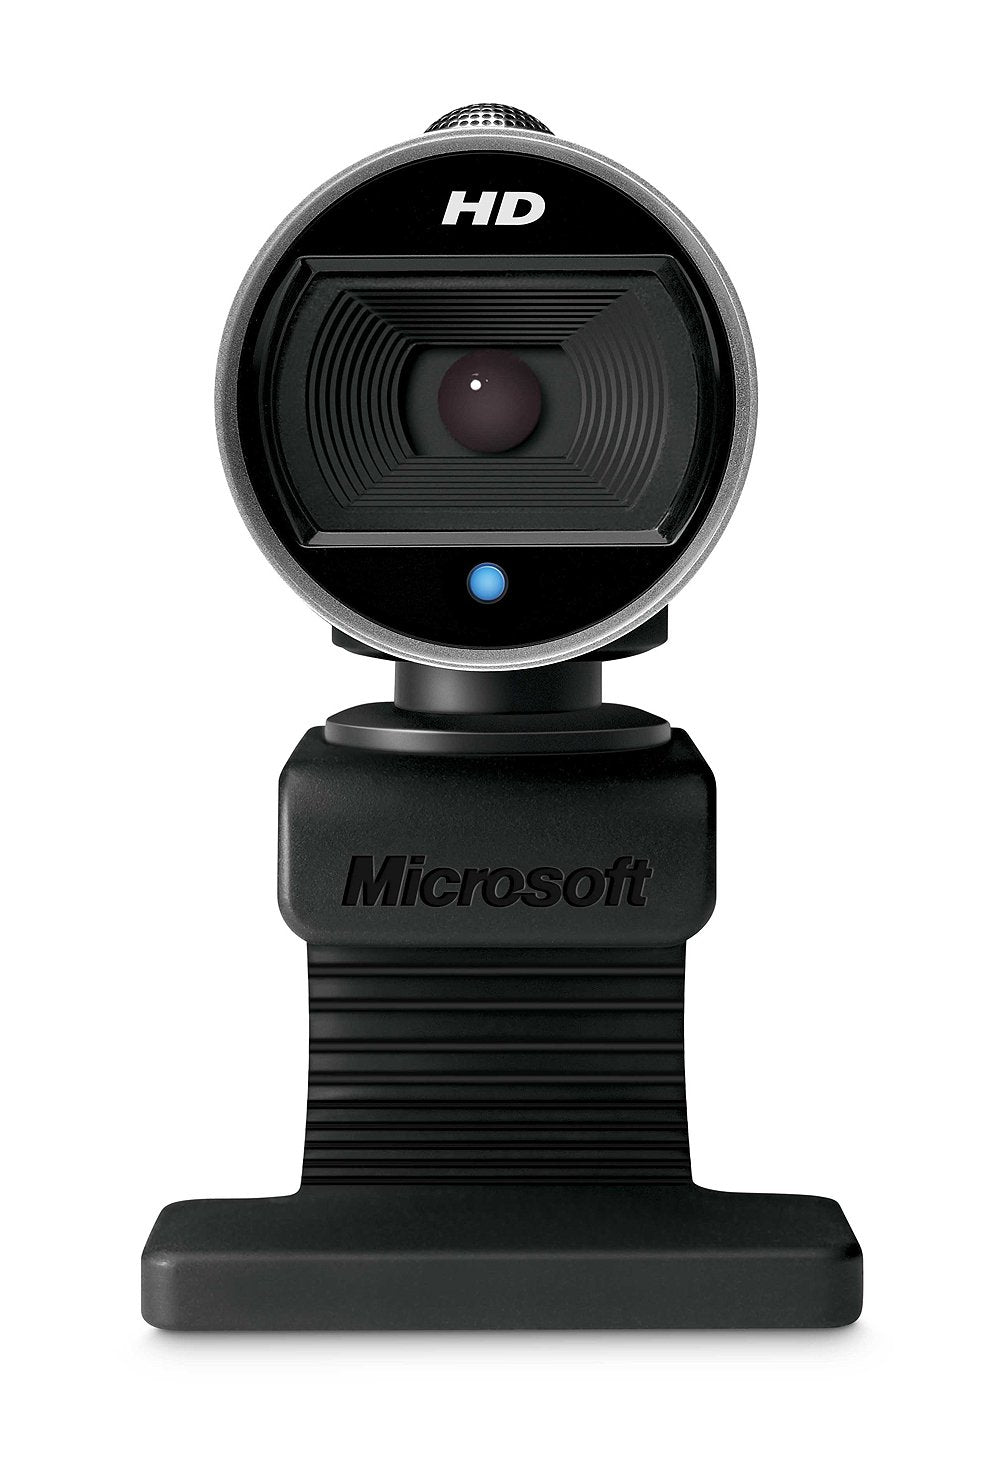 Microsoft LifeCam Cinema 720p HD Webcam for Business - Black